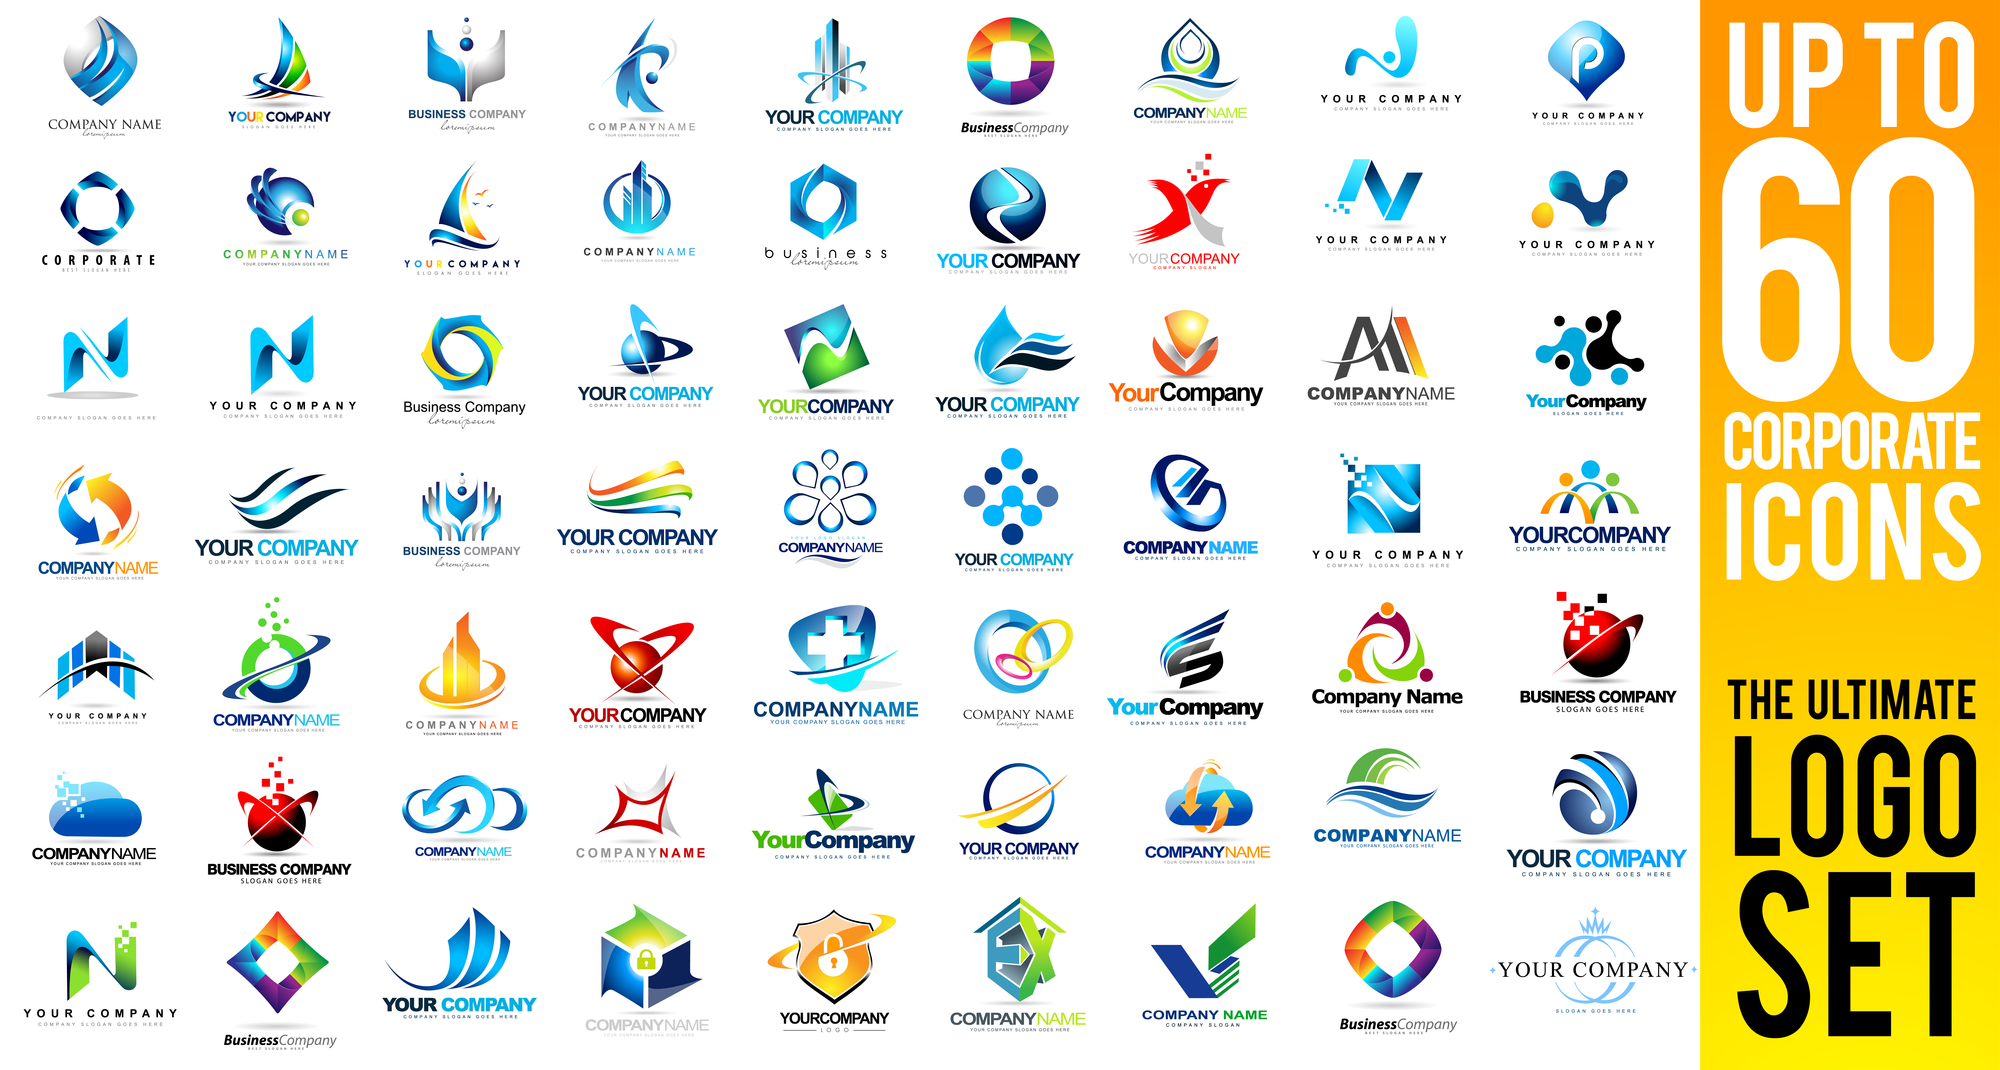 Distintos ejemplos de logos de empresas